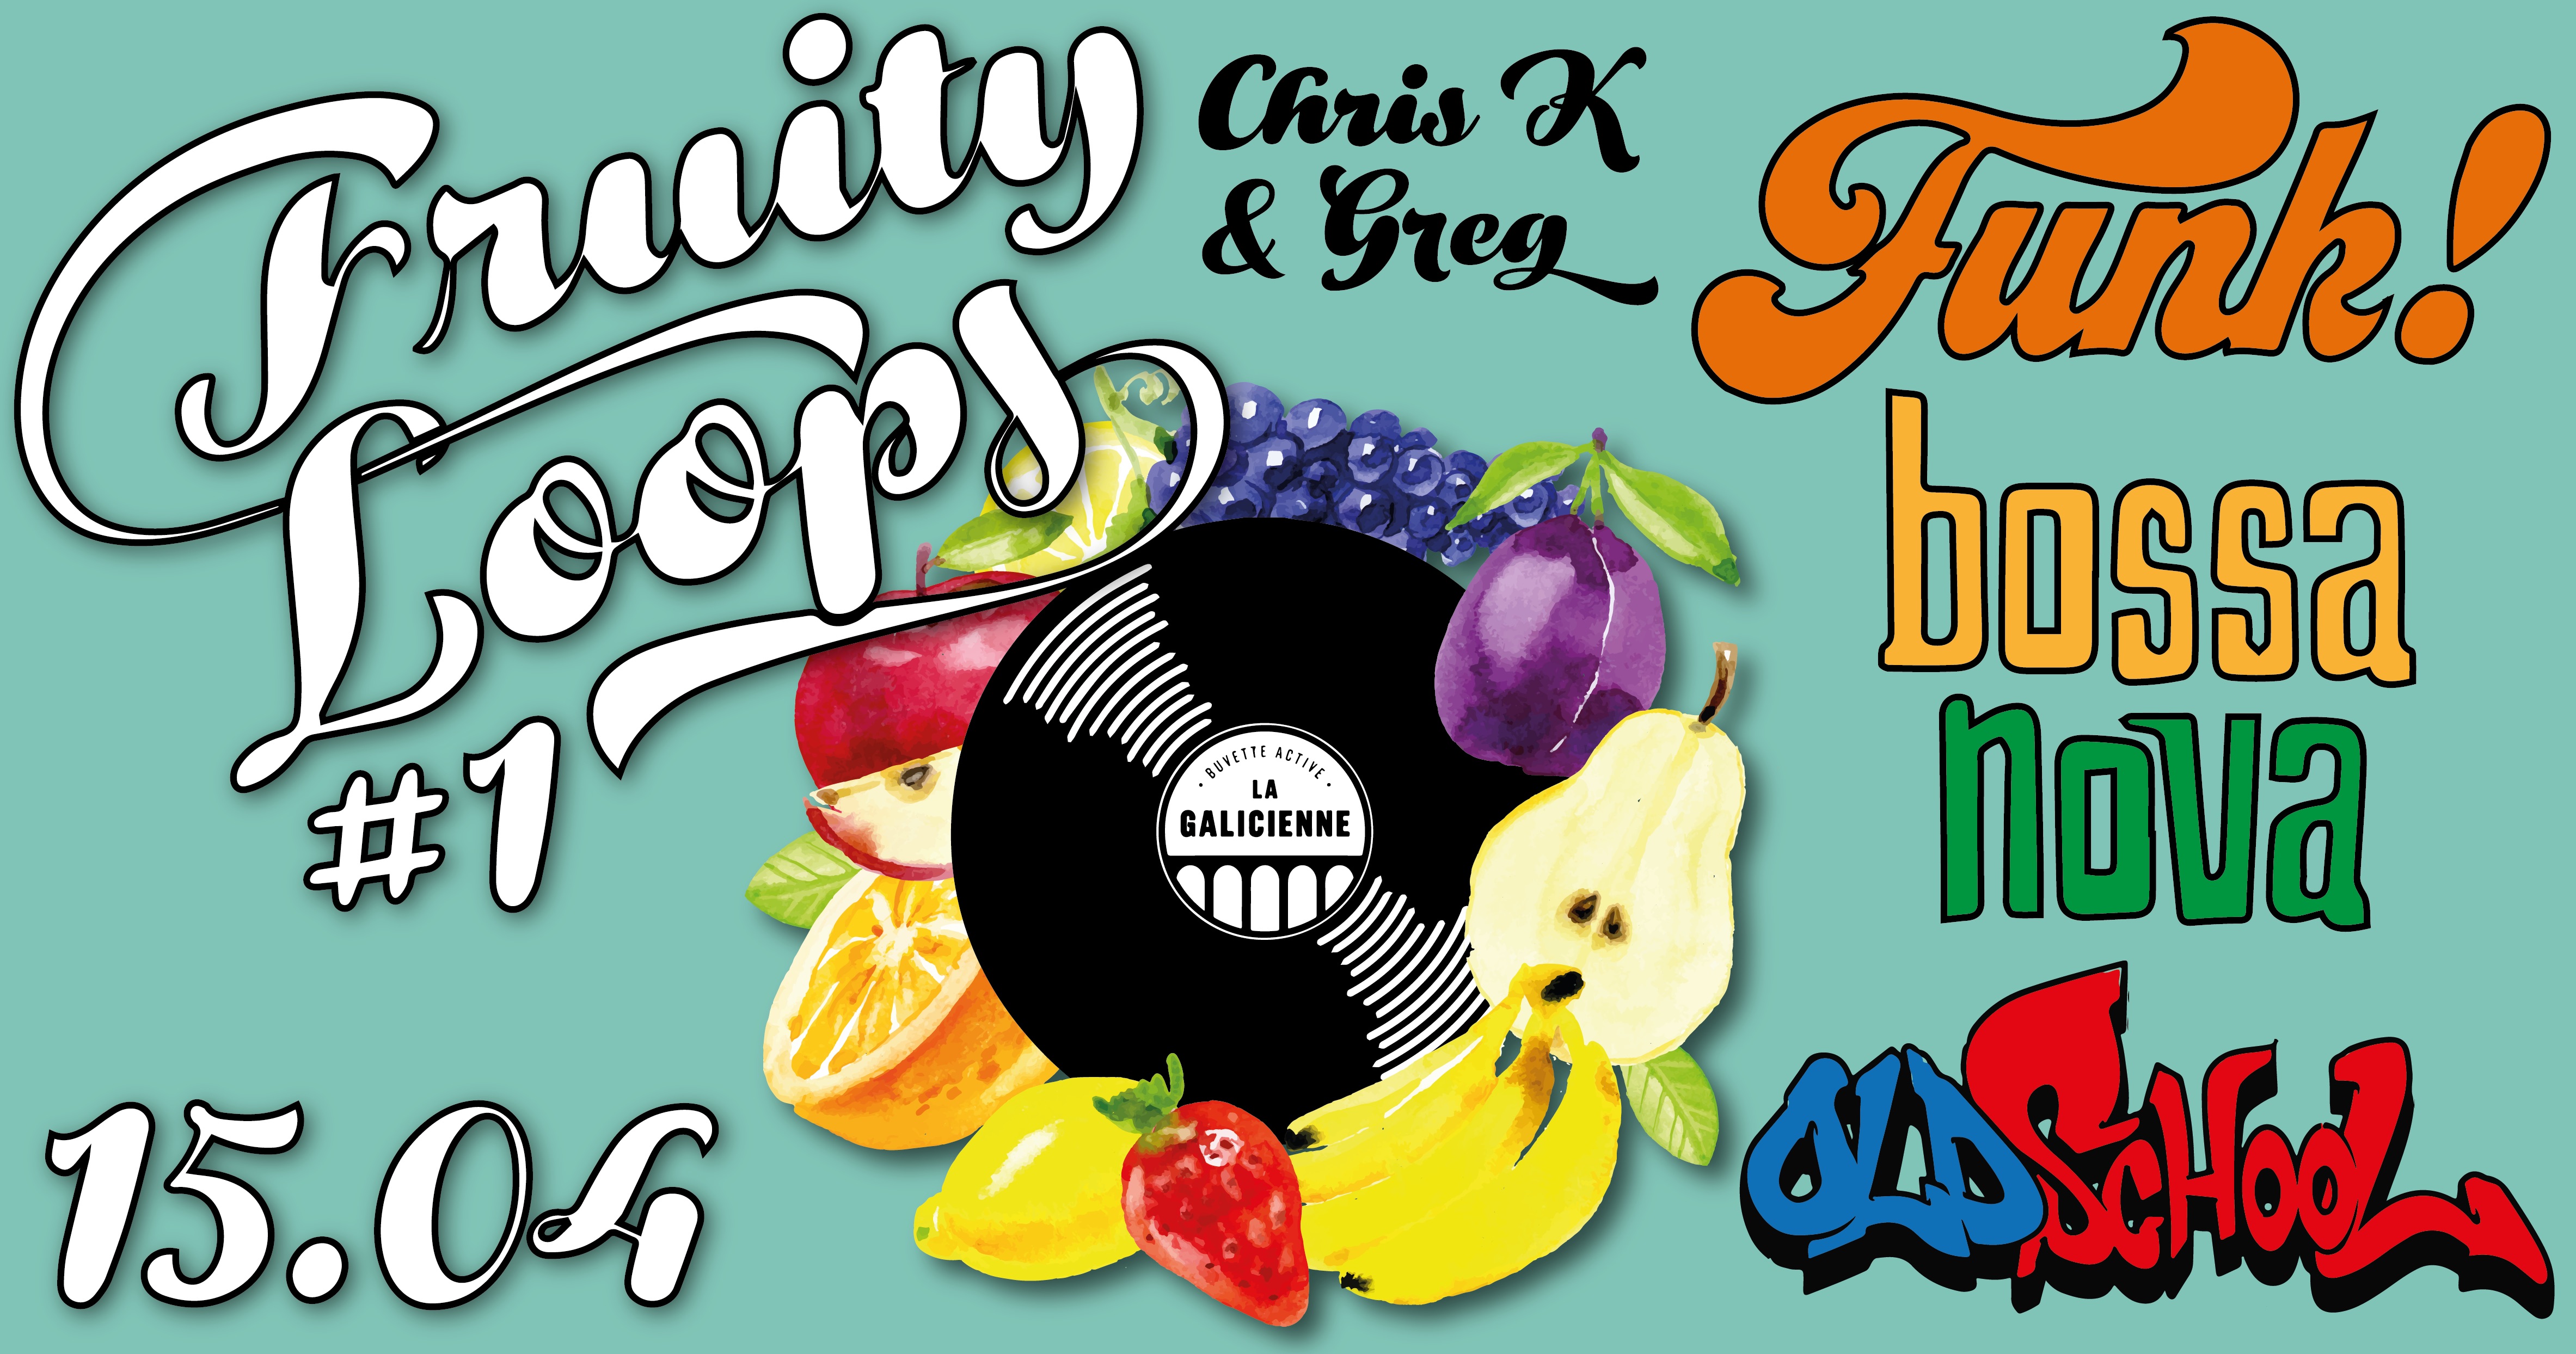 Chris K & Greg Fruity Loops #1